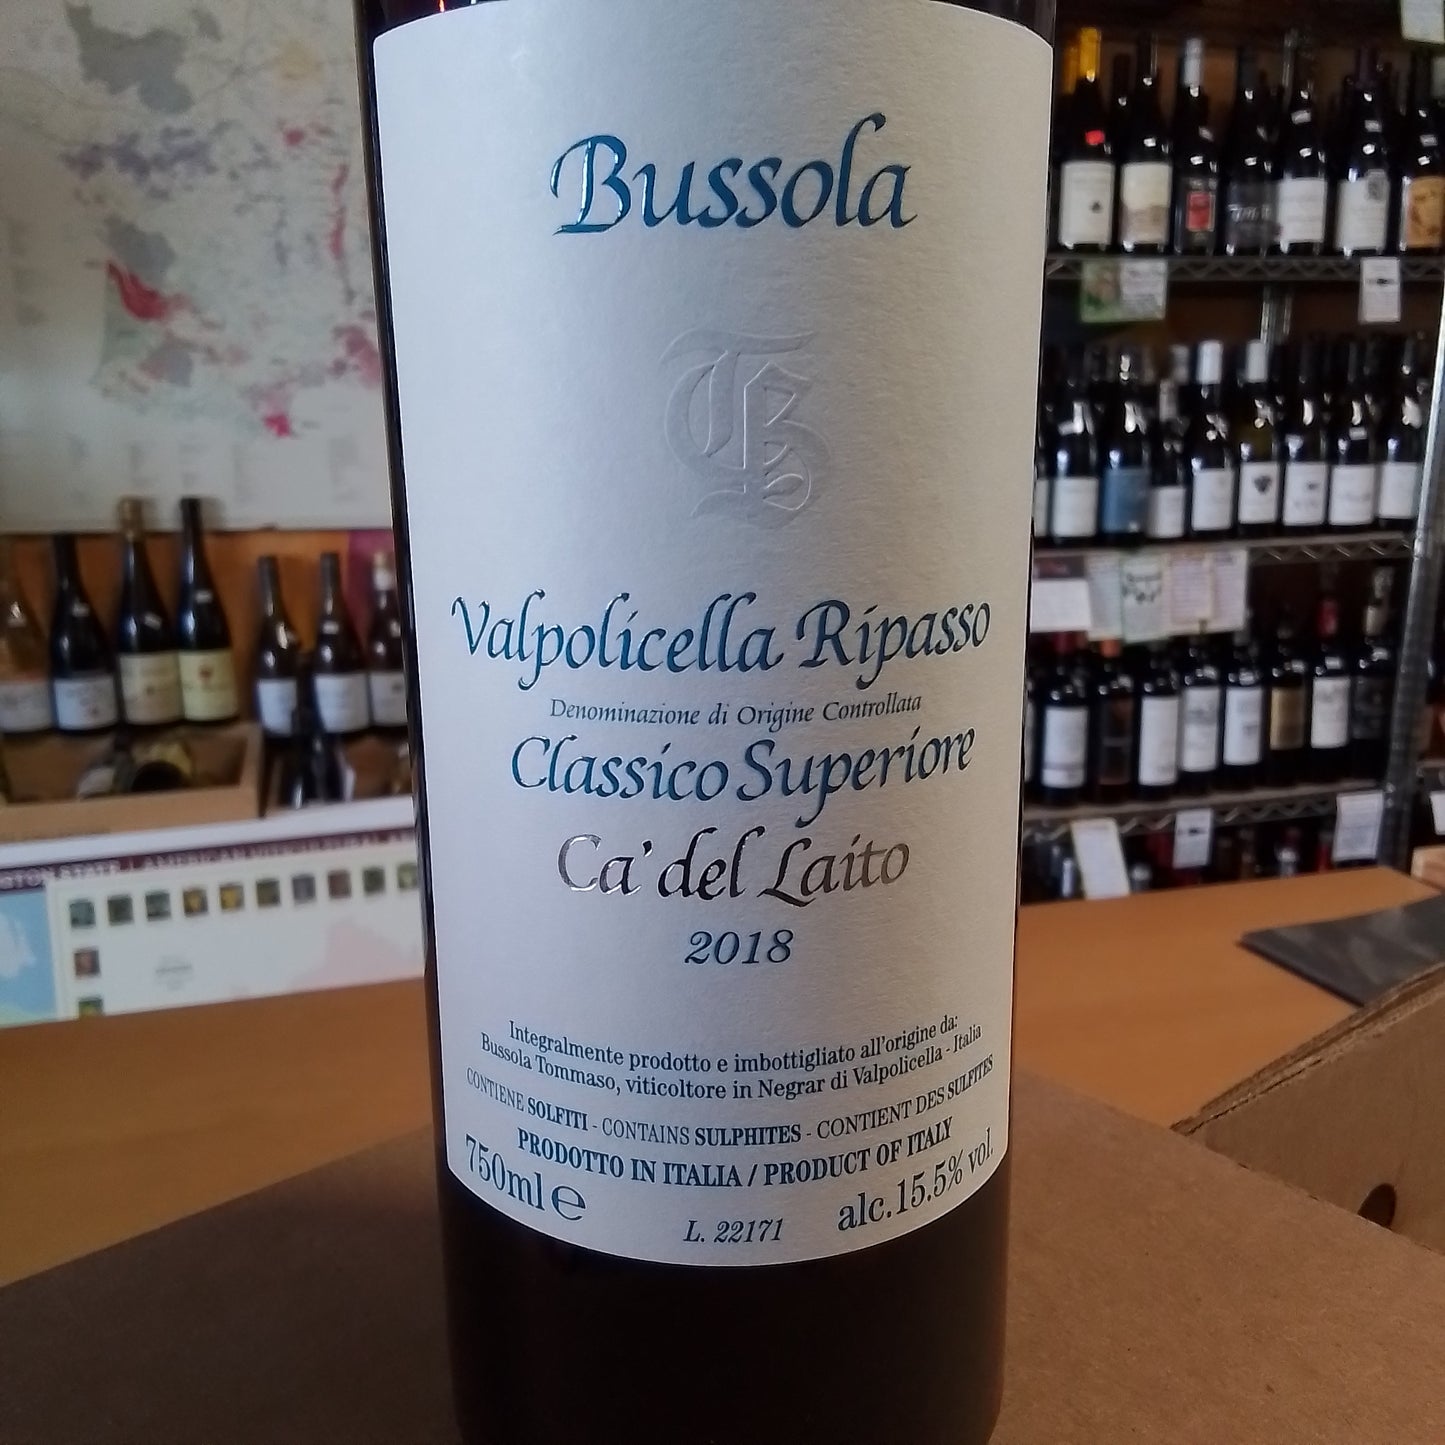 T. BUSSOLA 2018 Red Blend 'Valpolicella Ripasso Classico Superiore' (Veneto, Italy)